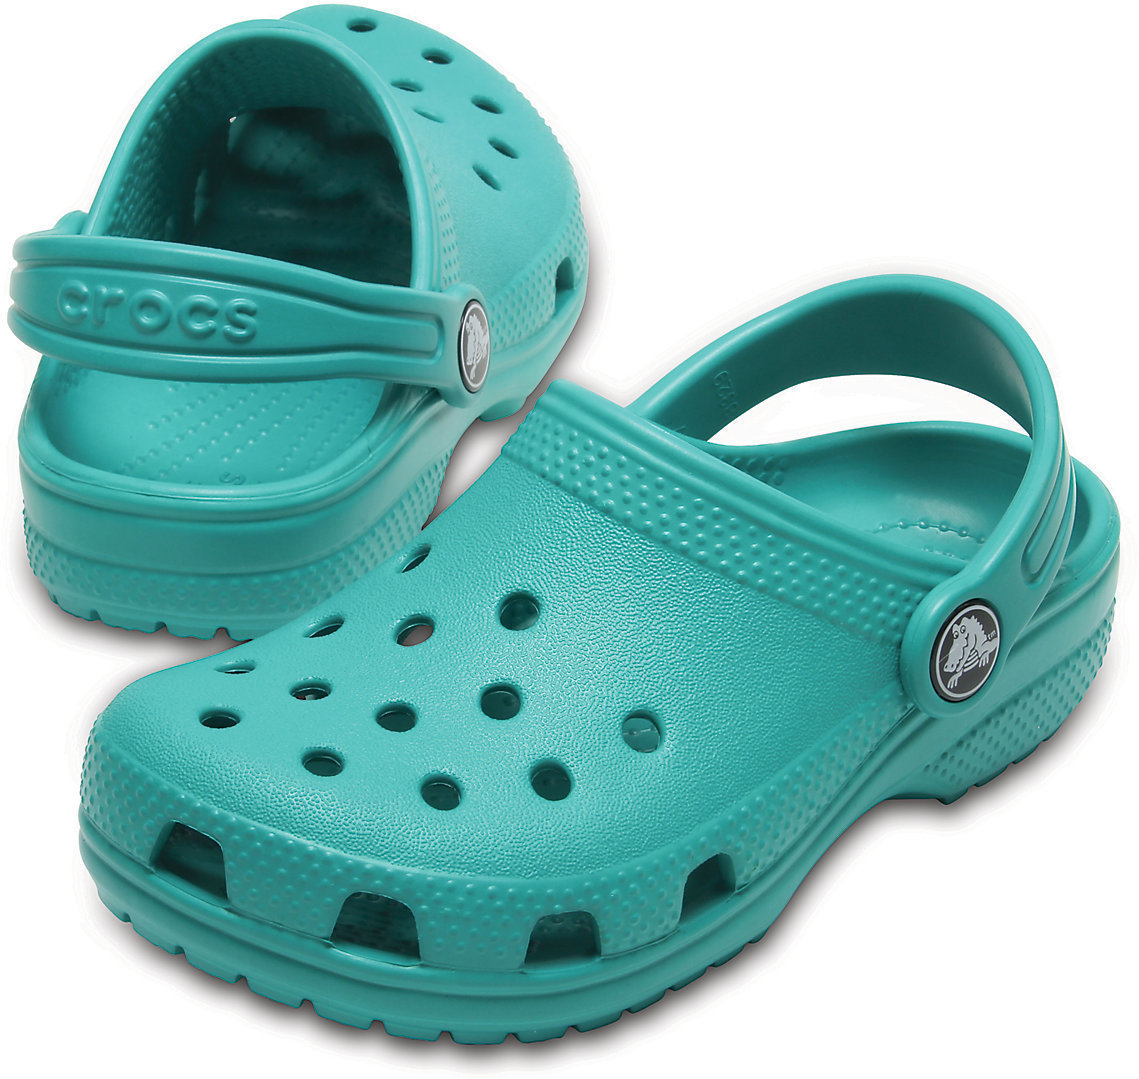 Buty żeglarskie dla dzieci Crocs Kids' Classic Clog Tropical Teal 23-24